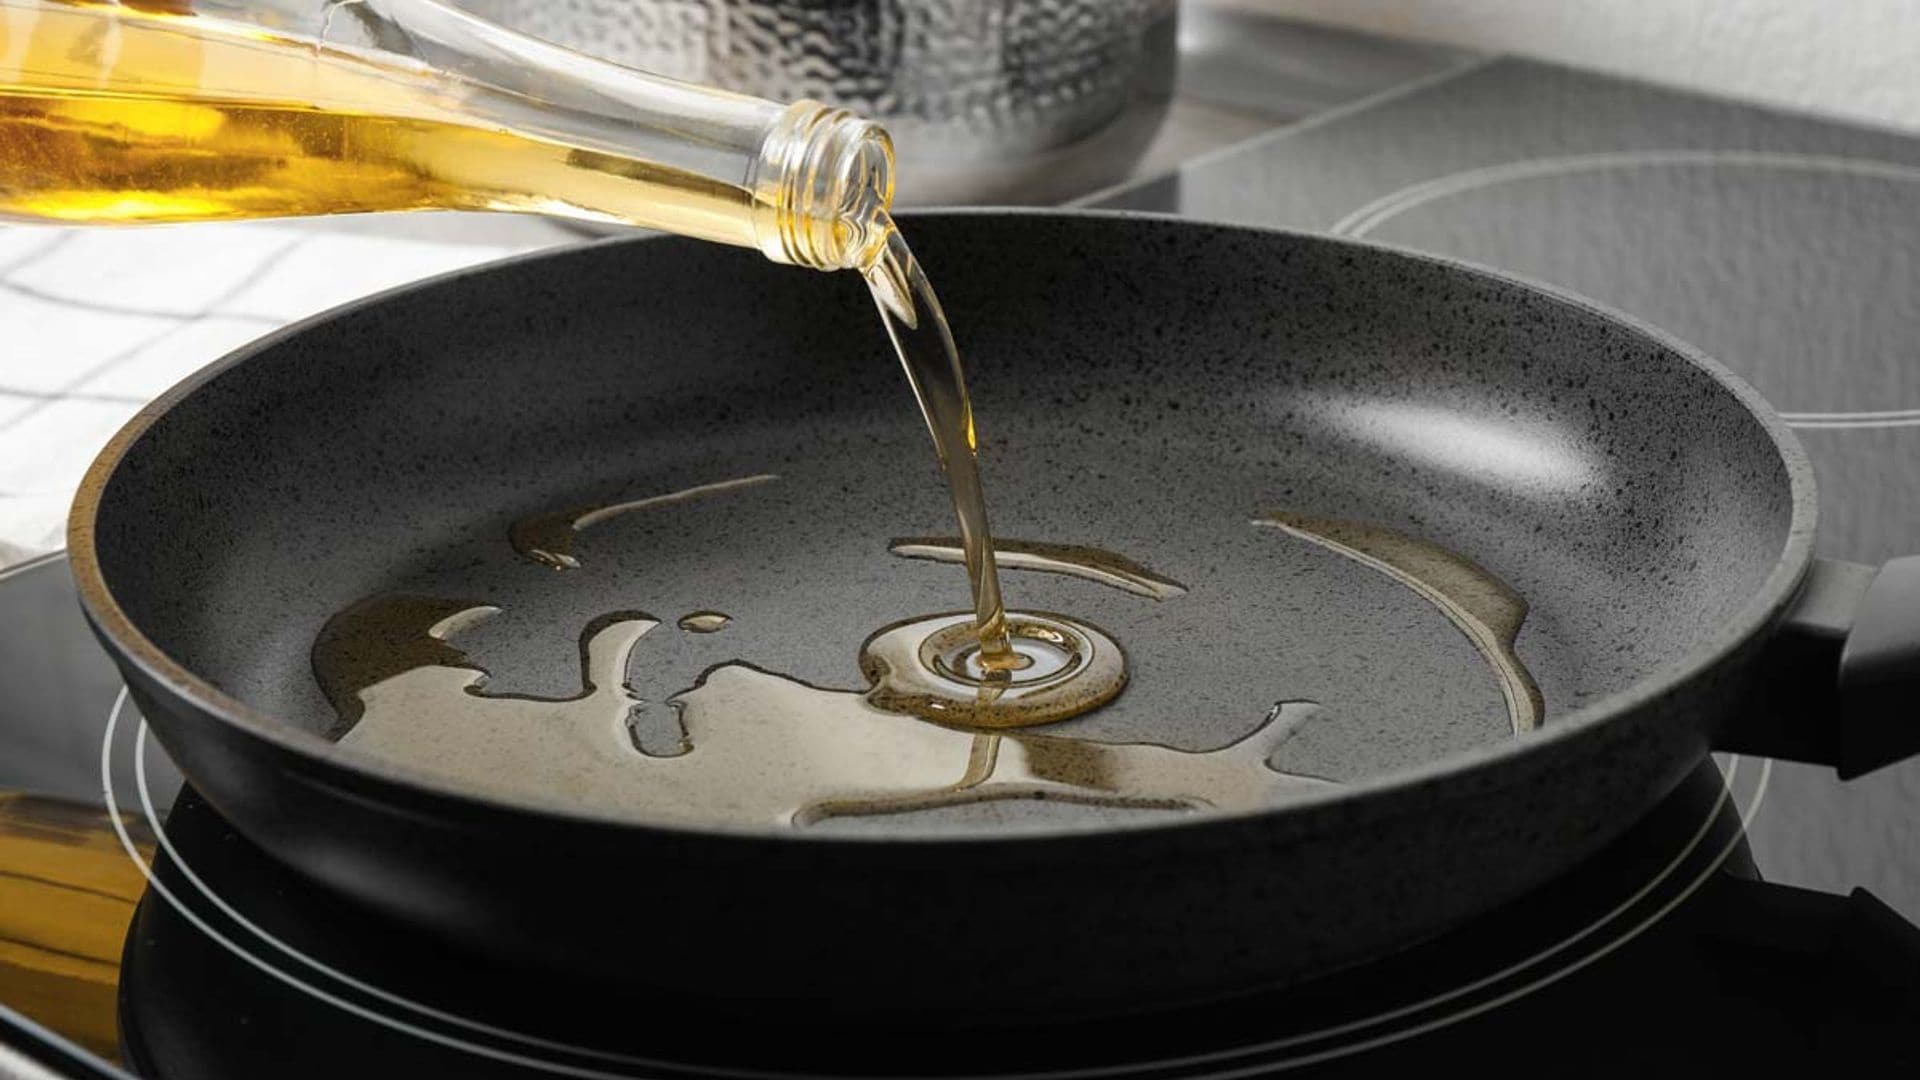 Trucos de cocina: Cómo evitar que el aceite salpique al freír